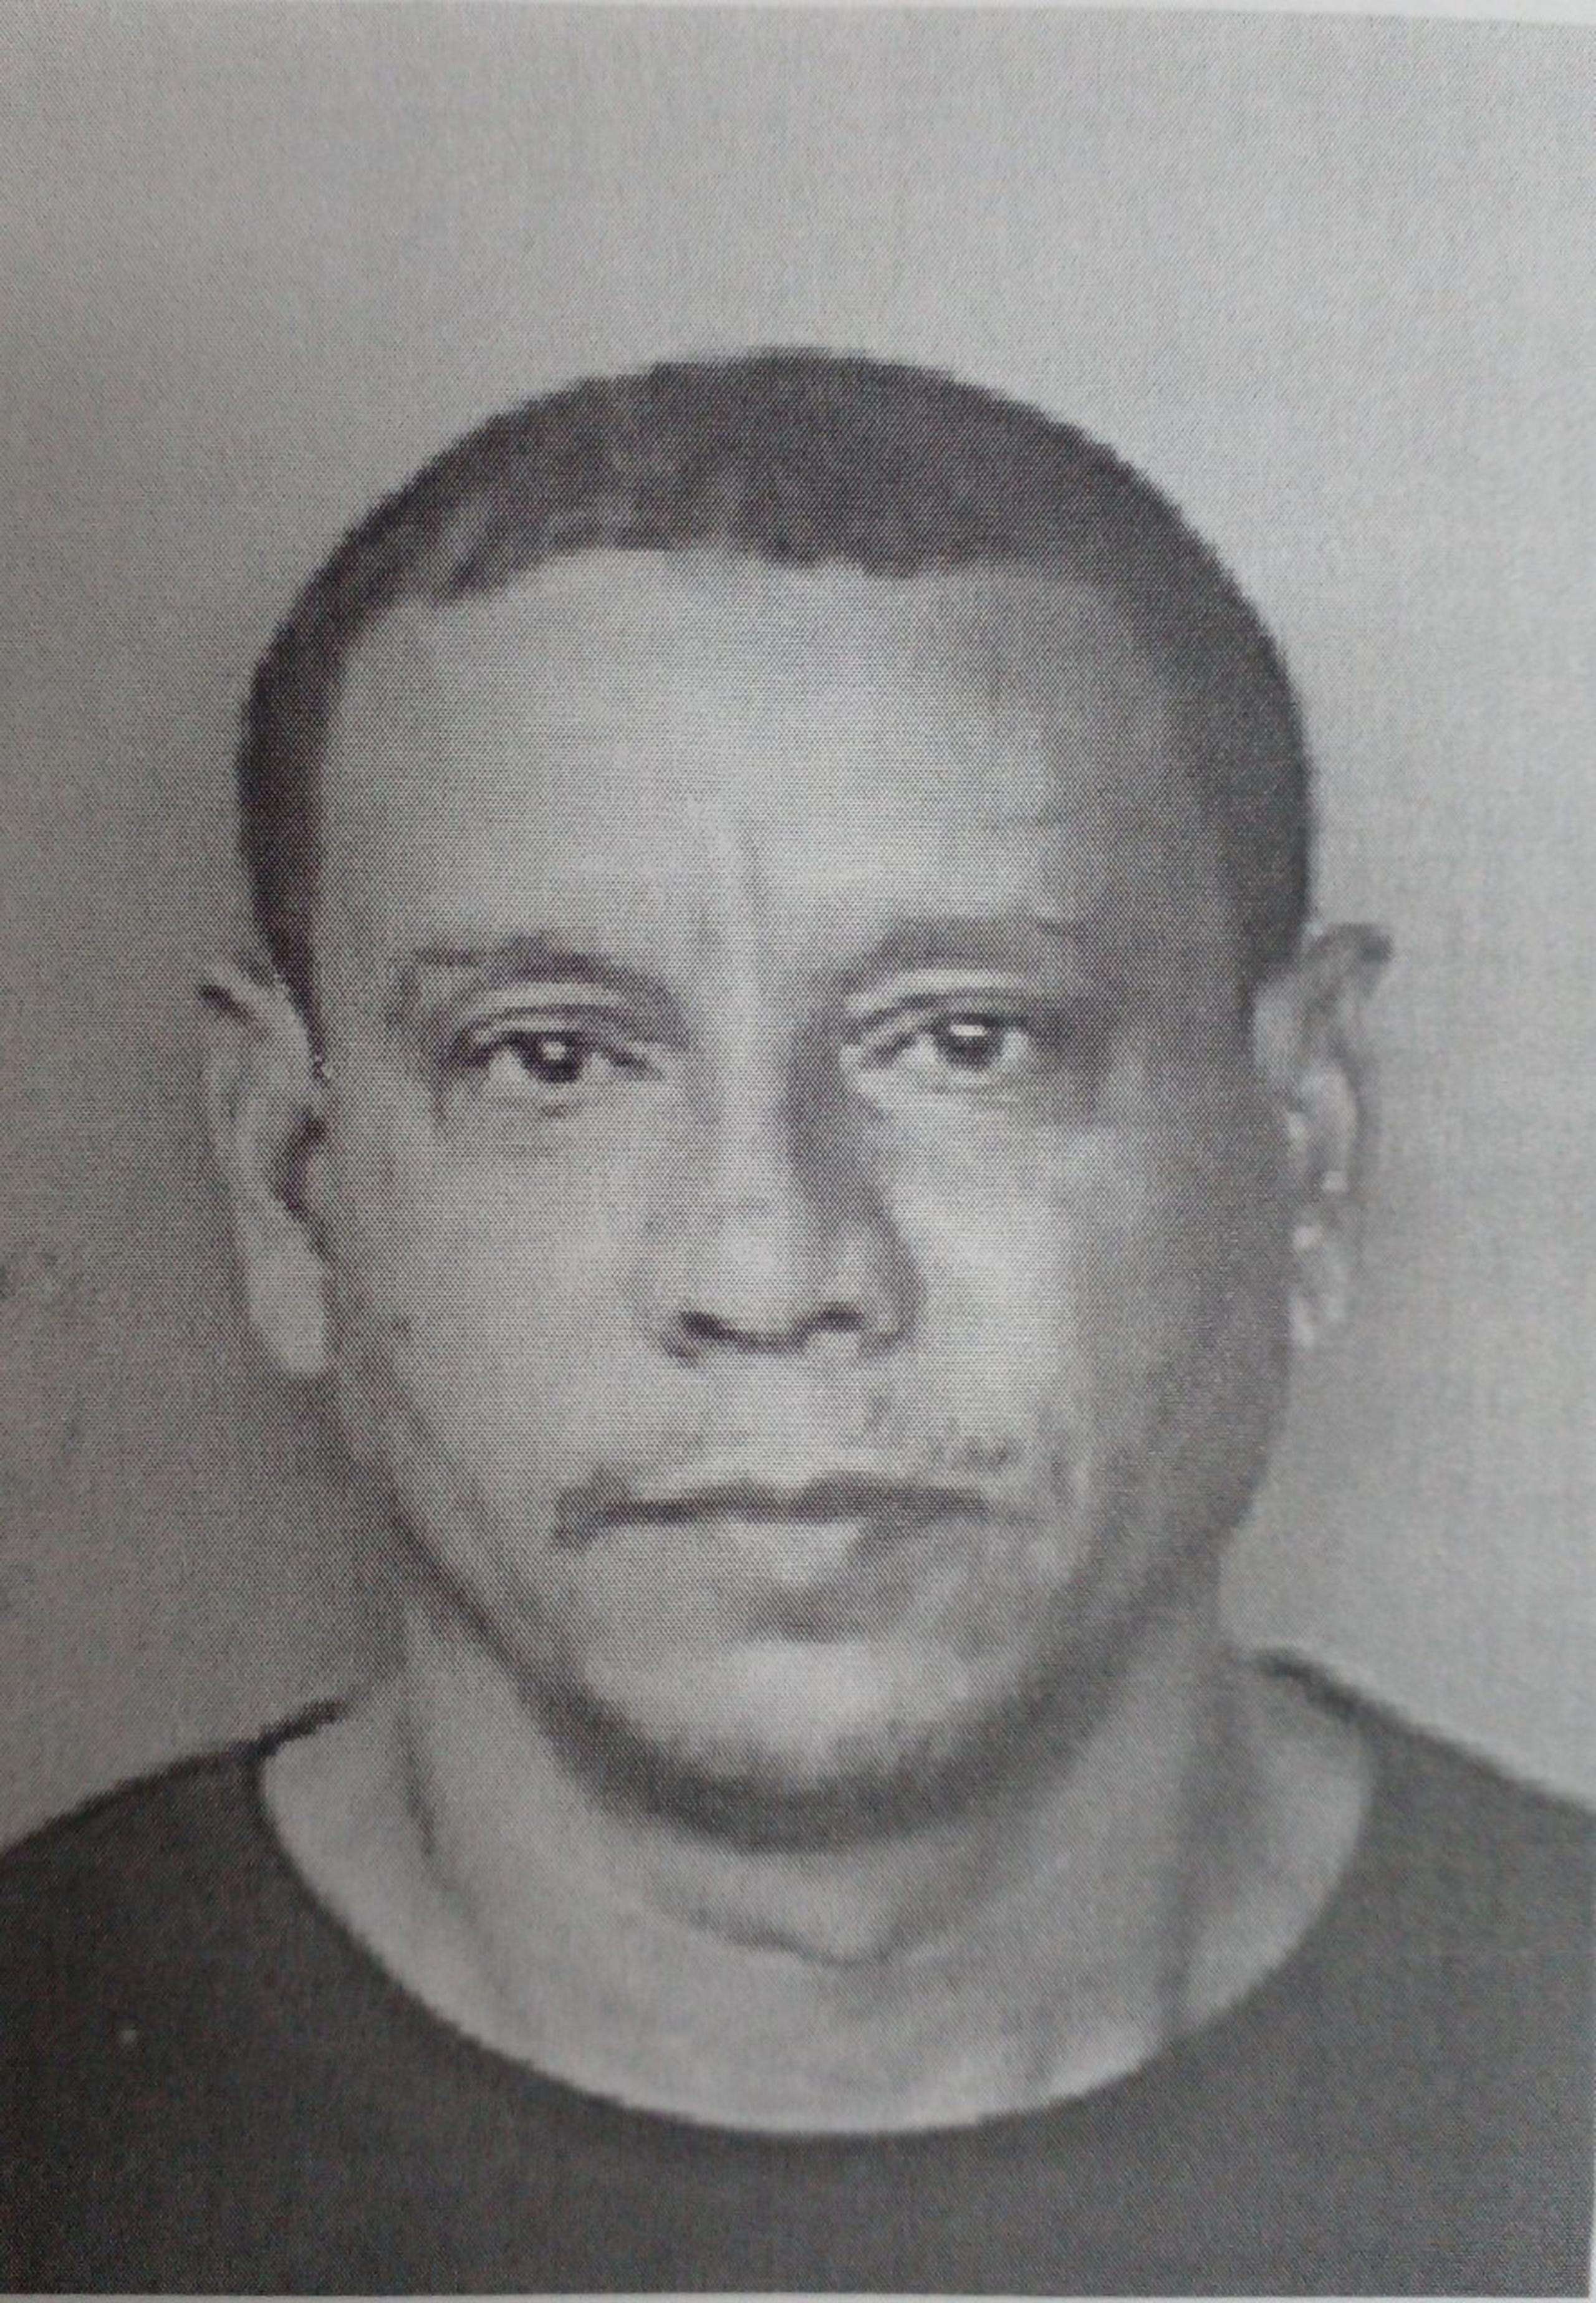 Manuel Gómez Rojas fue acusado por tres cargos nuevos de actos lascivos contra menores y fue ingresado nuevamente en prisión.